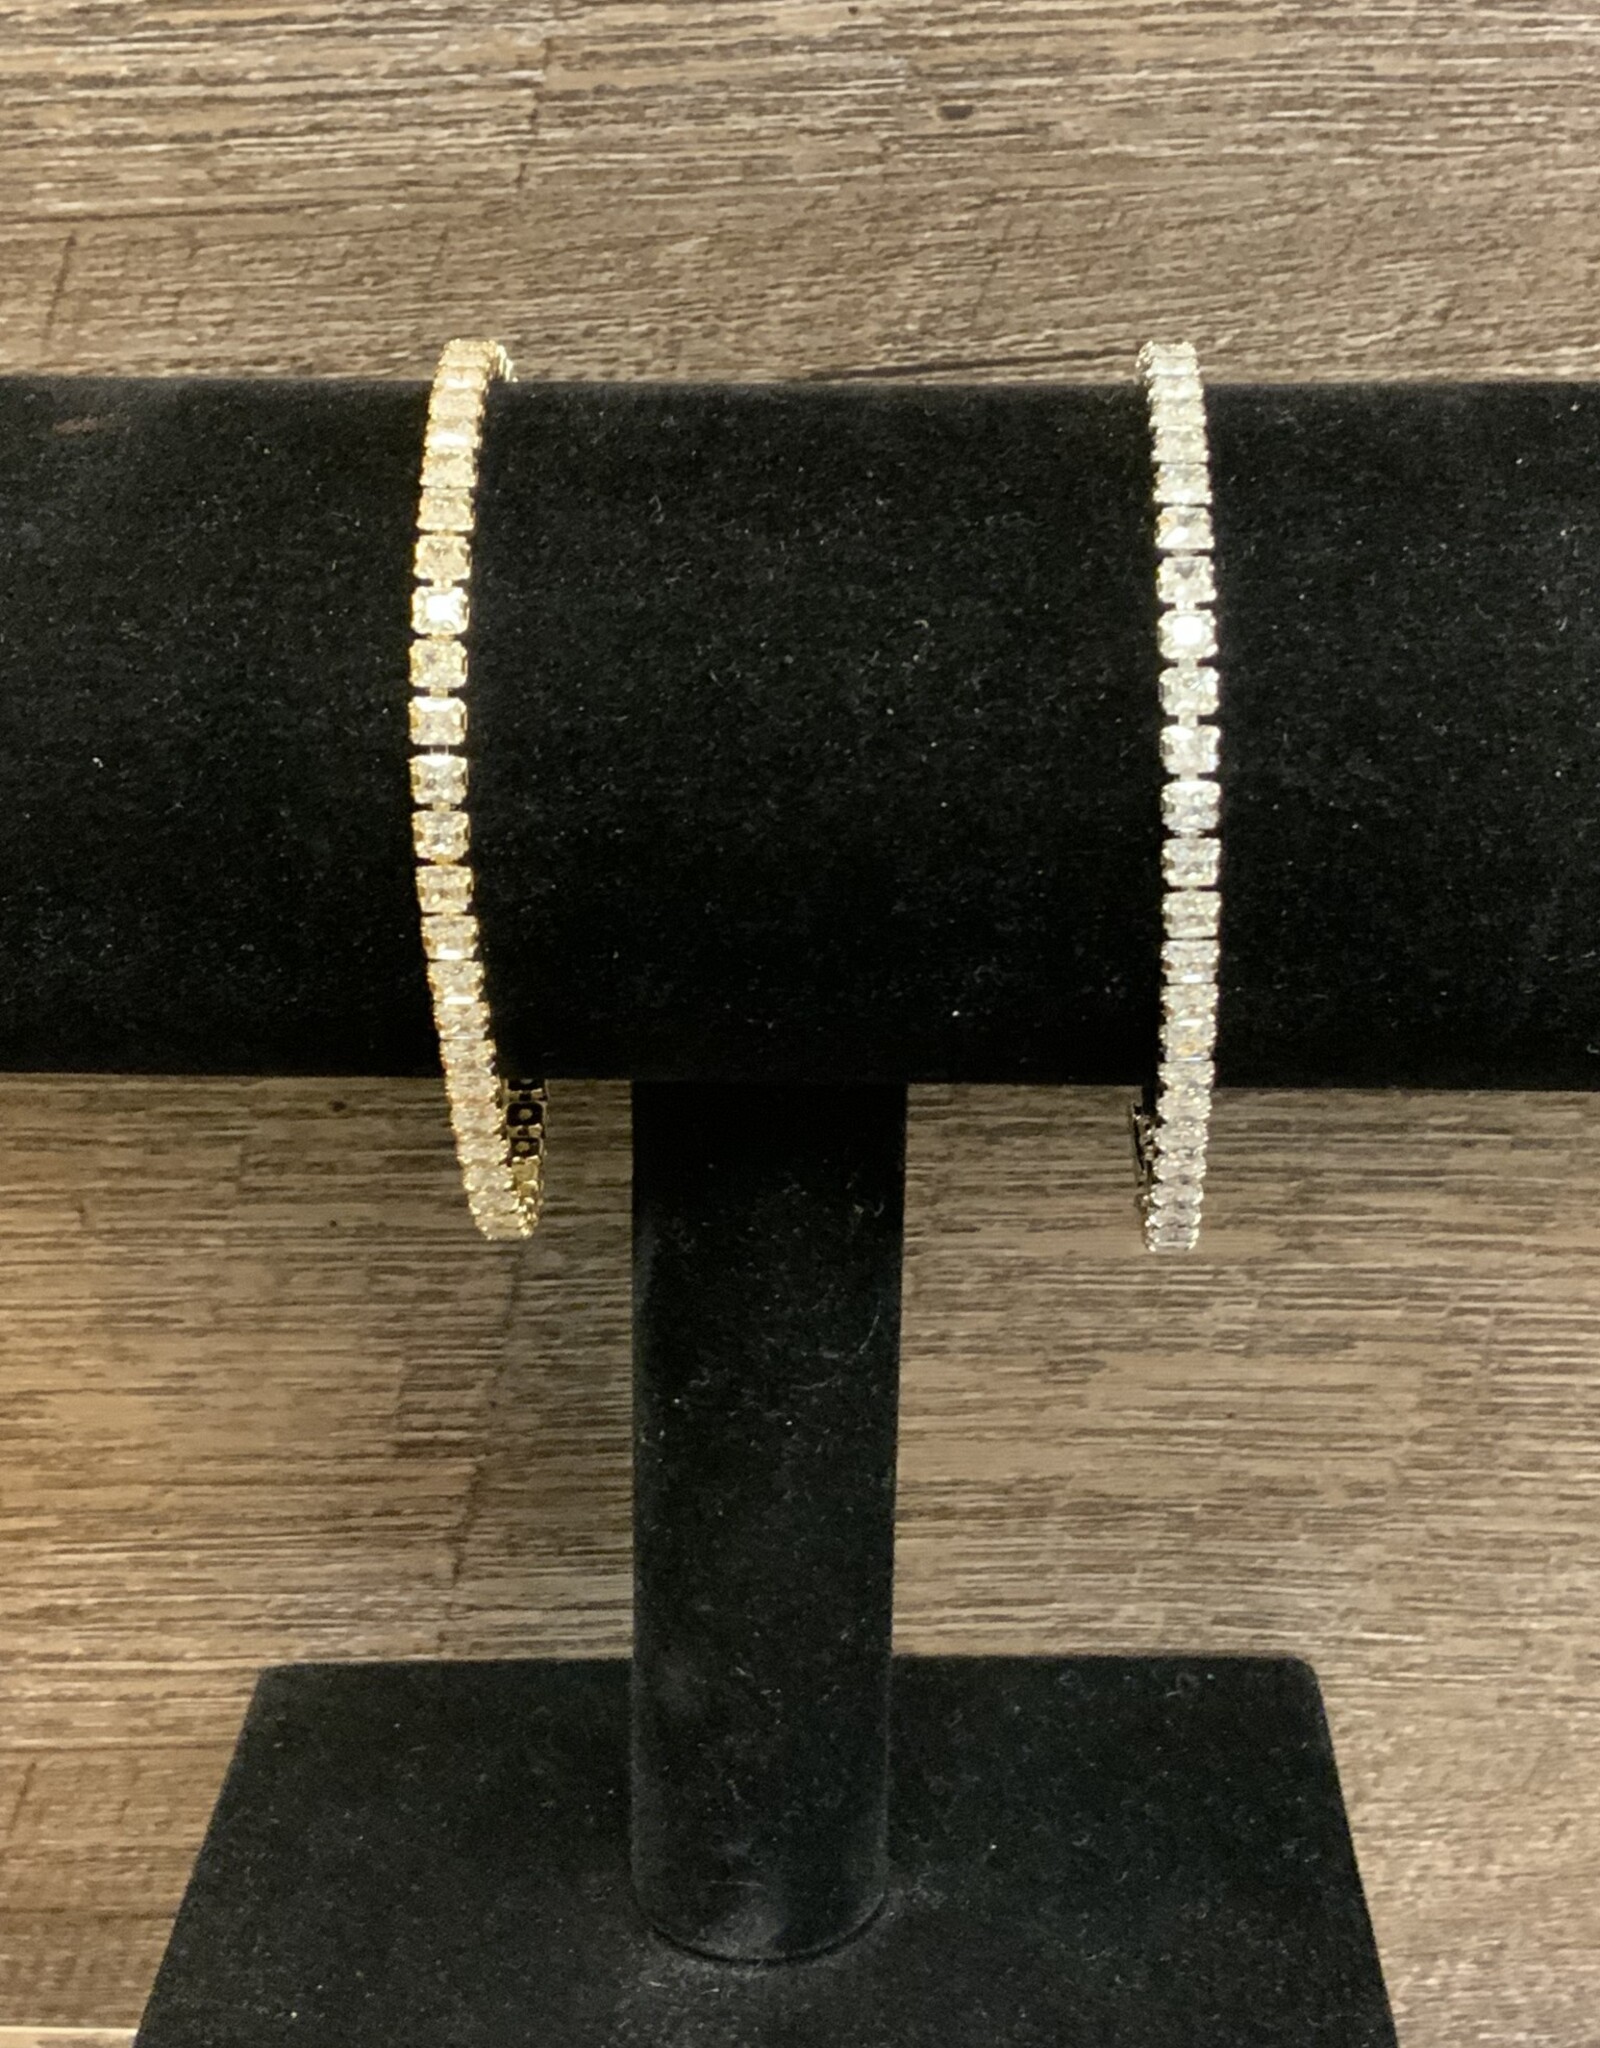 Silver or Gold Large Crystal Adjustable Tennis Bracelet